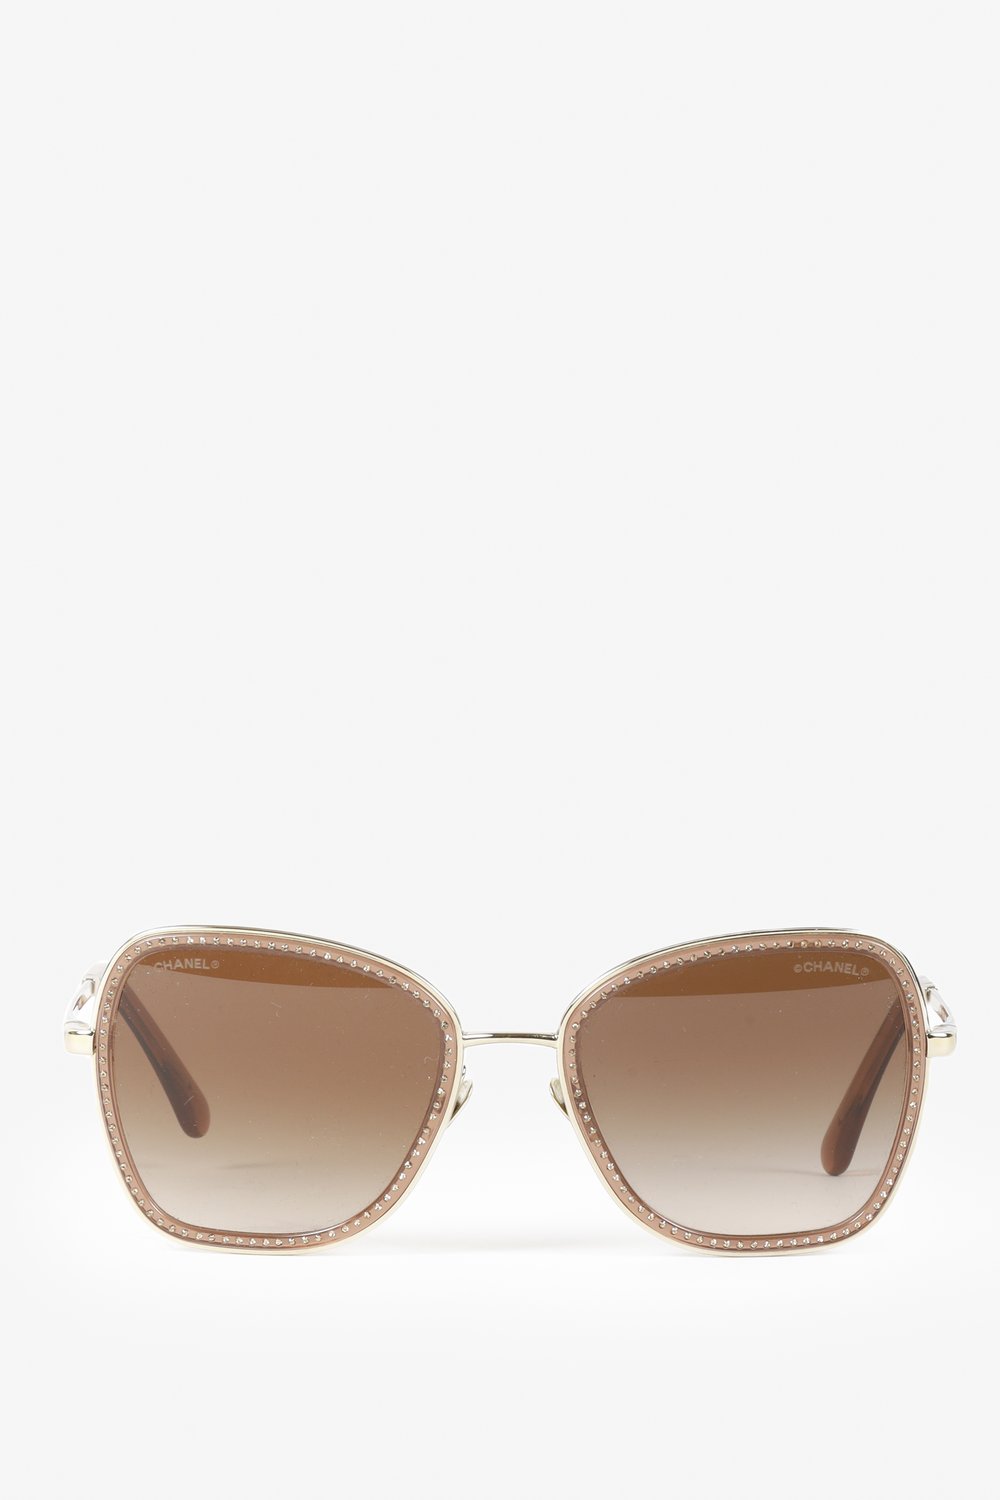 CHANEL 4277B Sunglasses